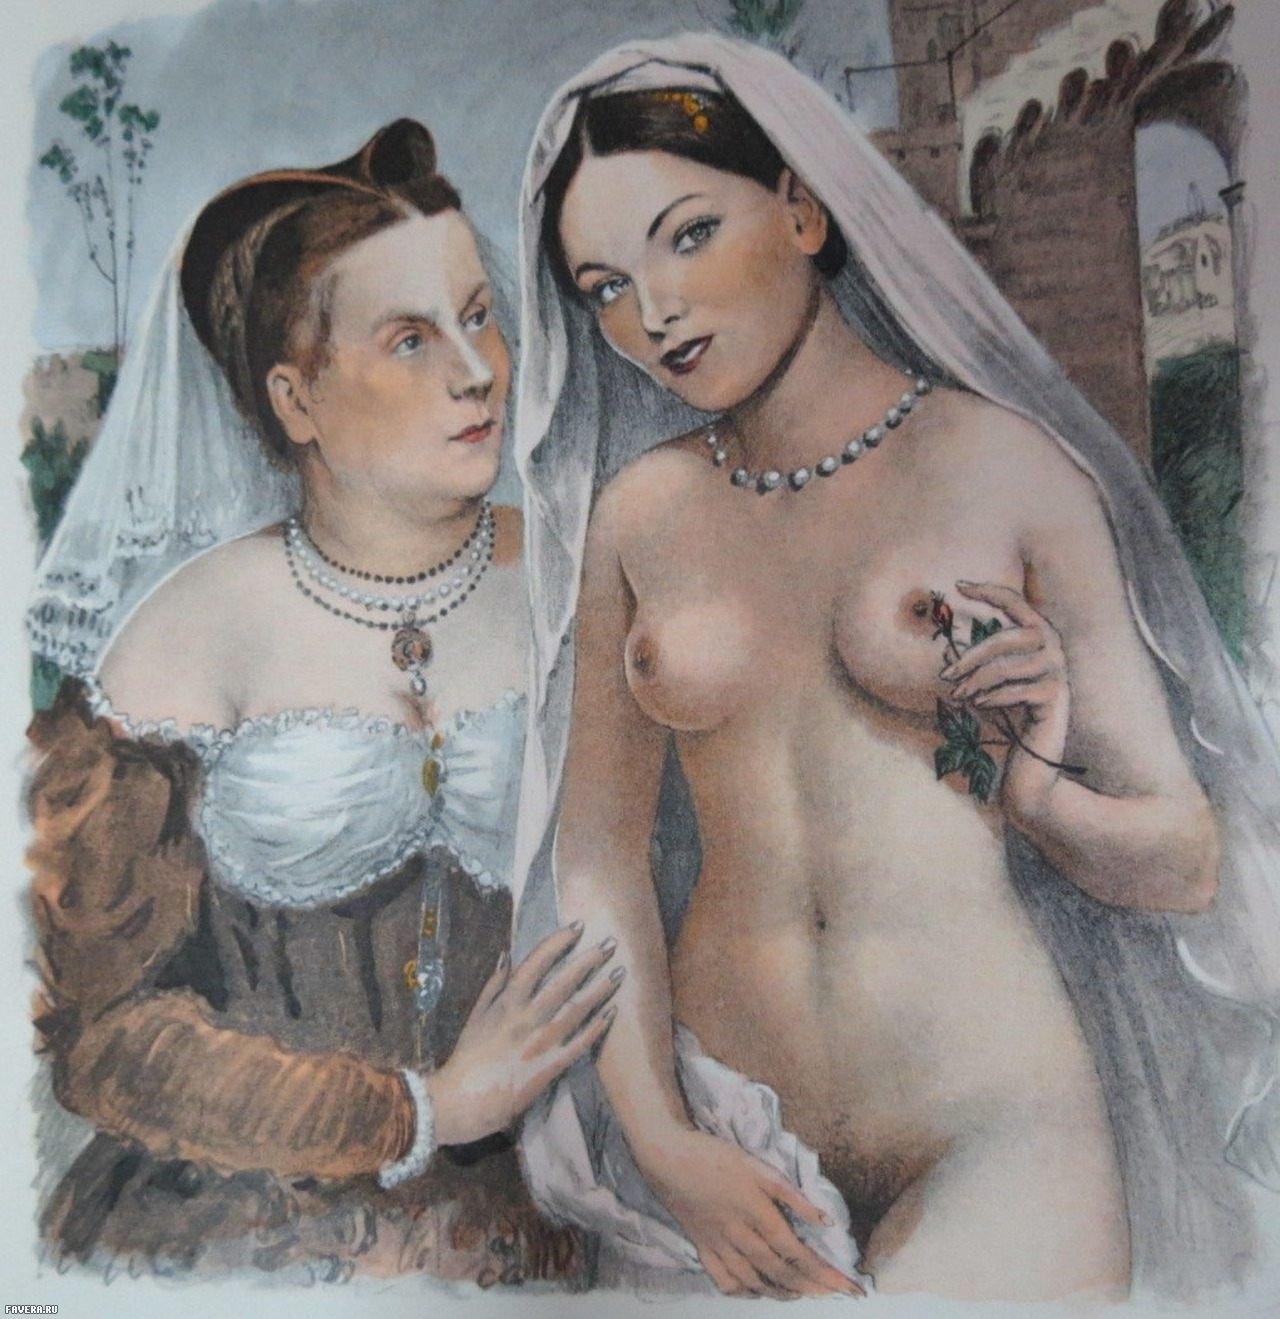 порно старые фото 18 век порно видео HD